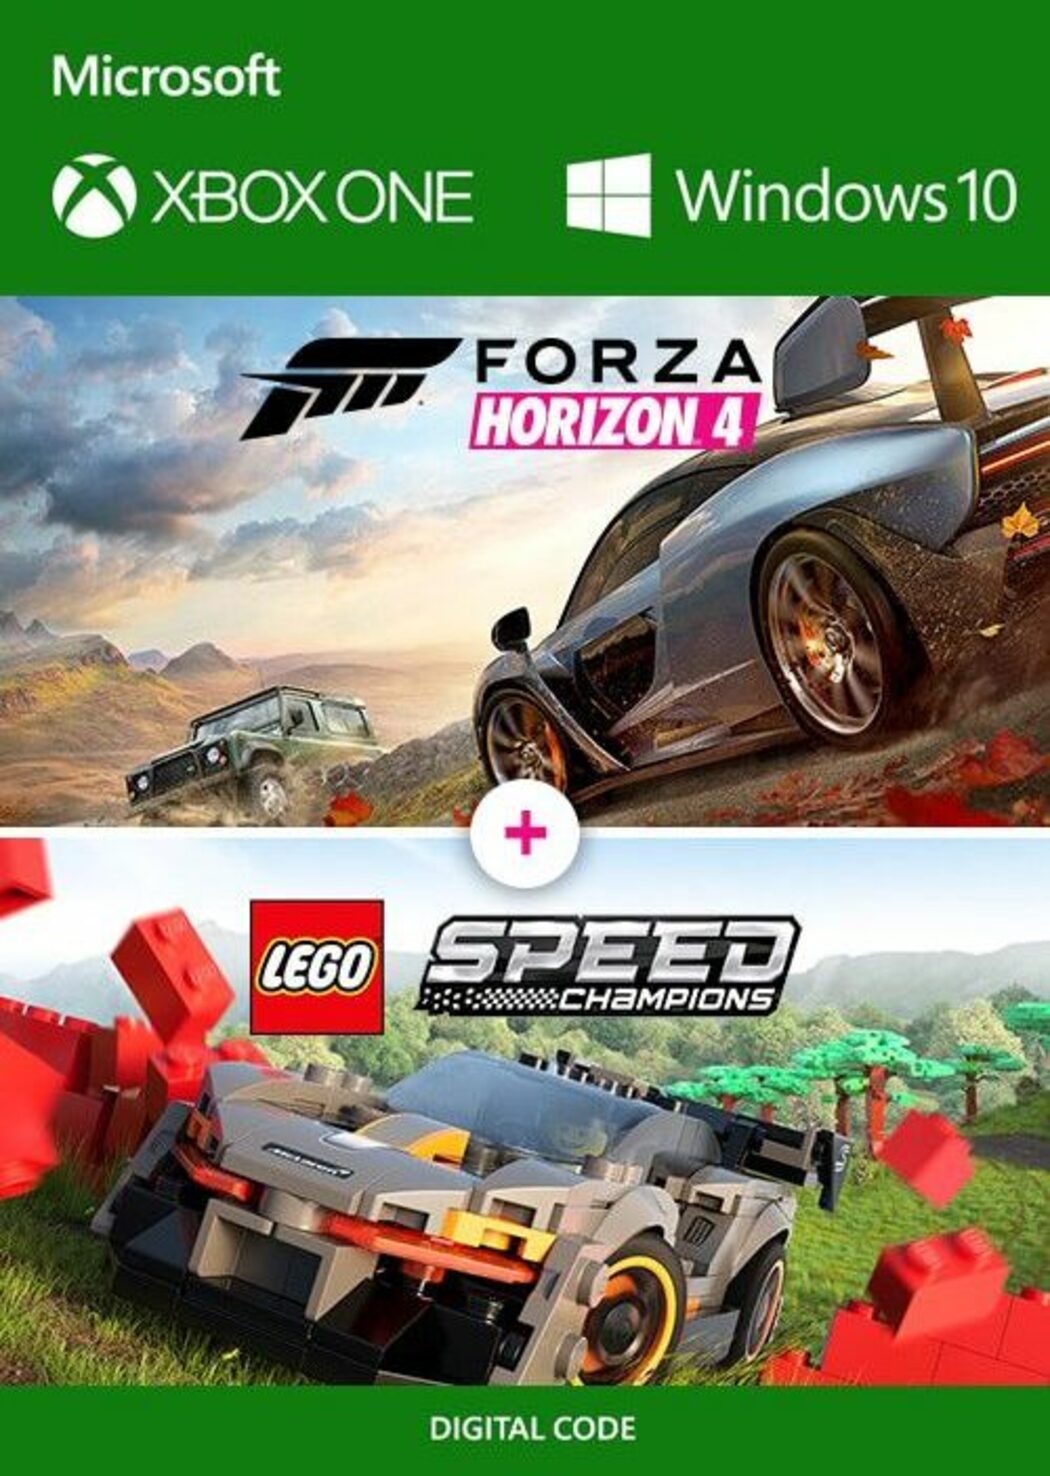 Premonición Estrecho de Bering Celo Forza Horizon 4 LEGO Speed Champions Xbox Live Key | ENEBA